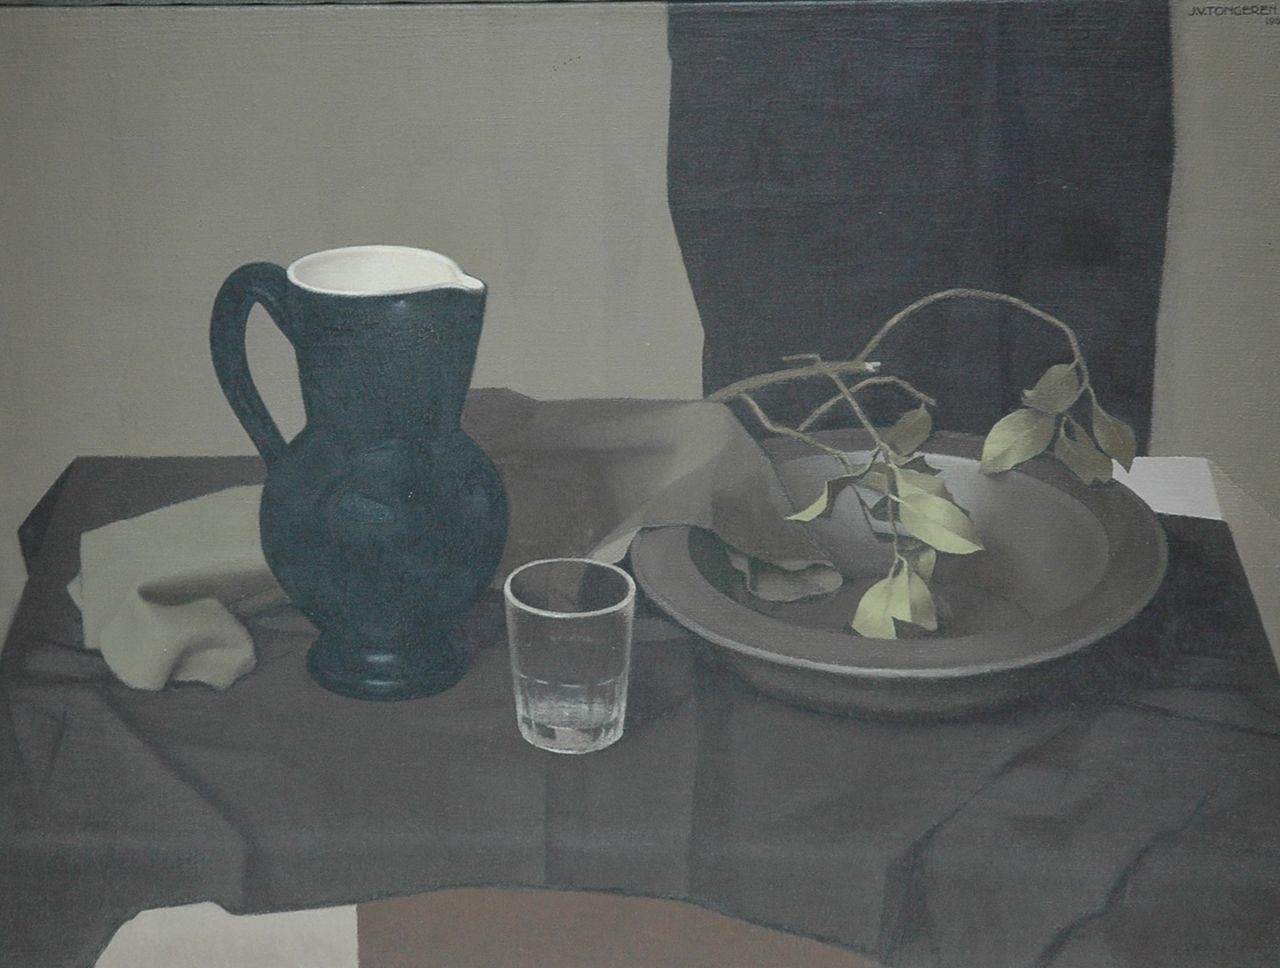 Tongeren J. van | Jan van Tongeren, Bowl and jar, Öl auf Leinwand 60,0 x 79,6 cm, signed u.r.